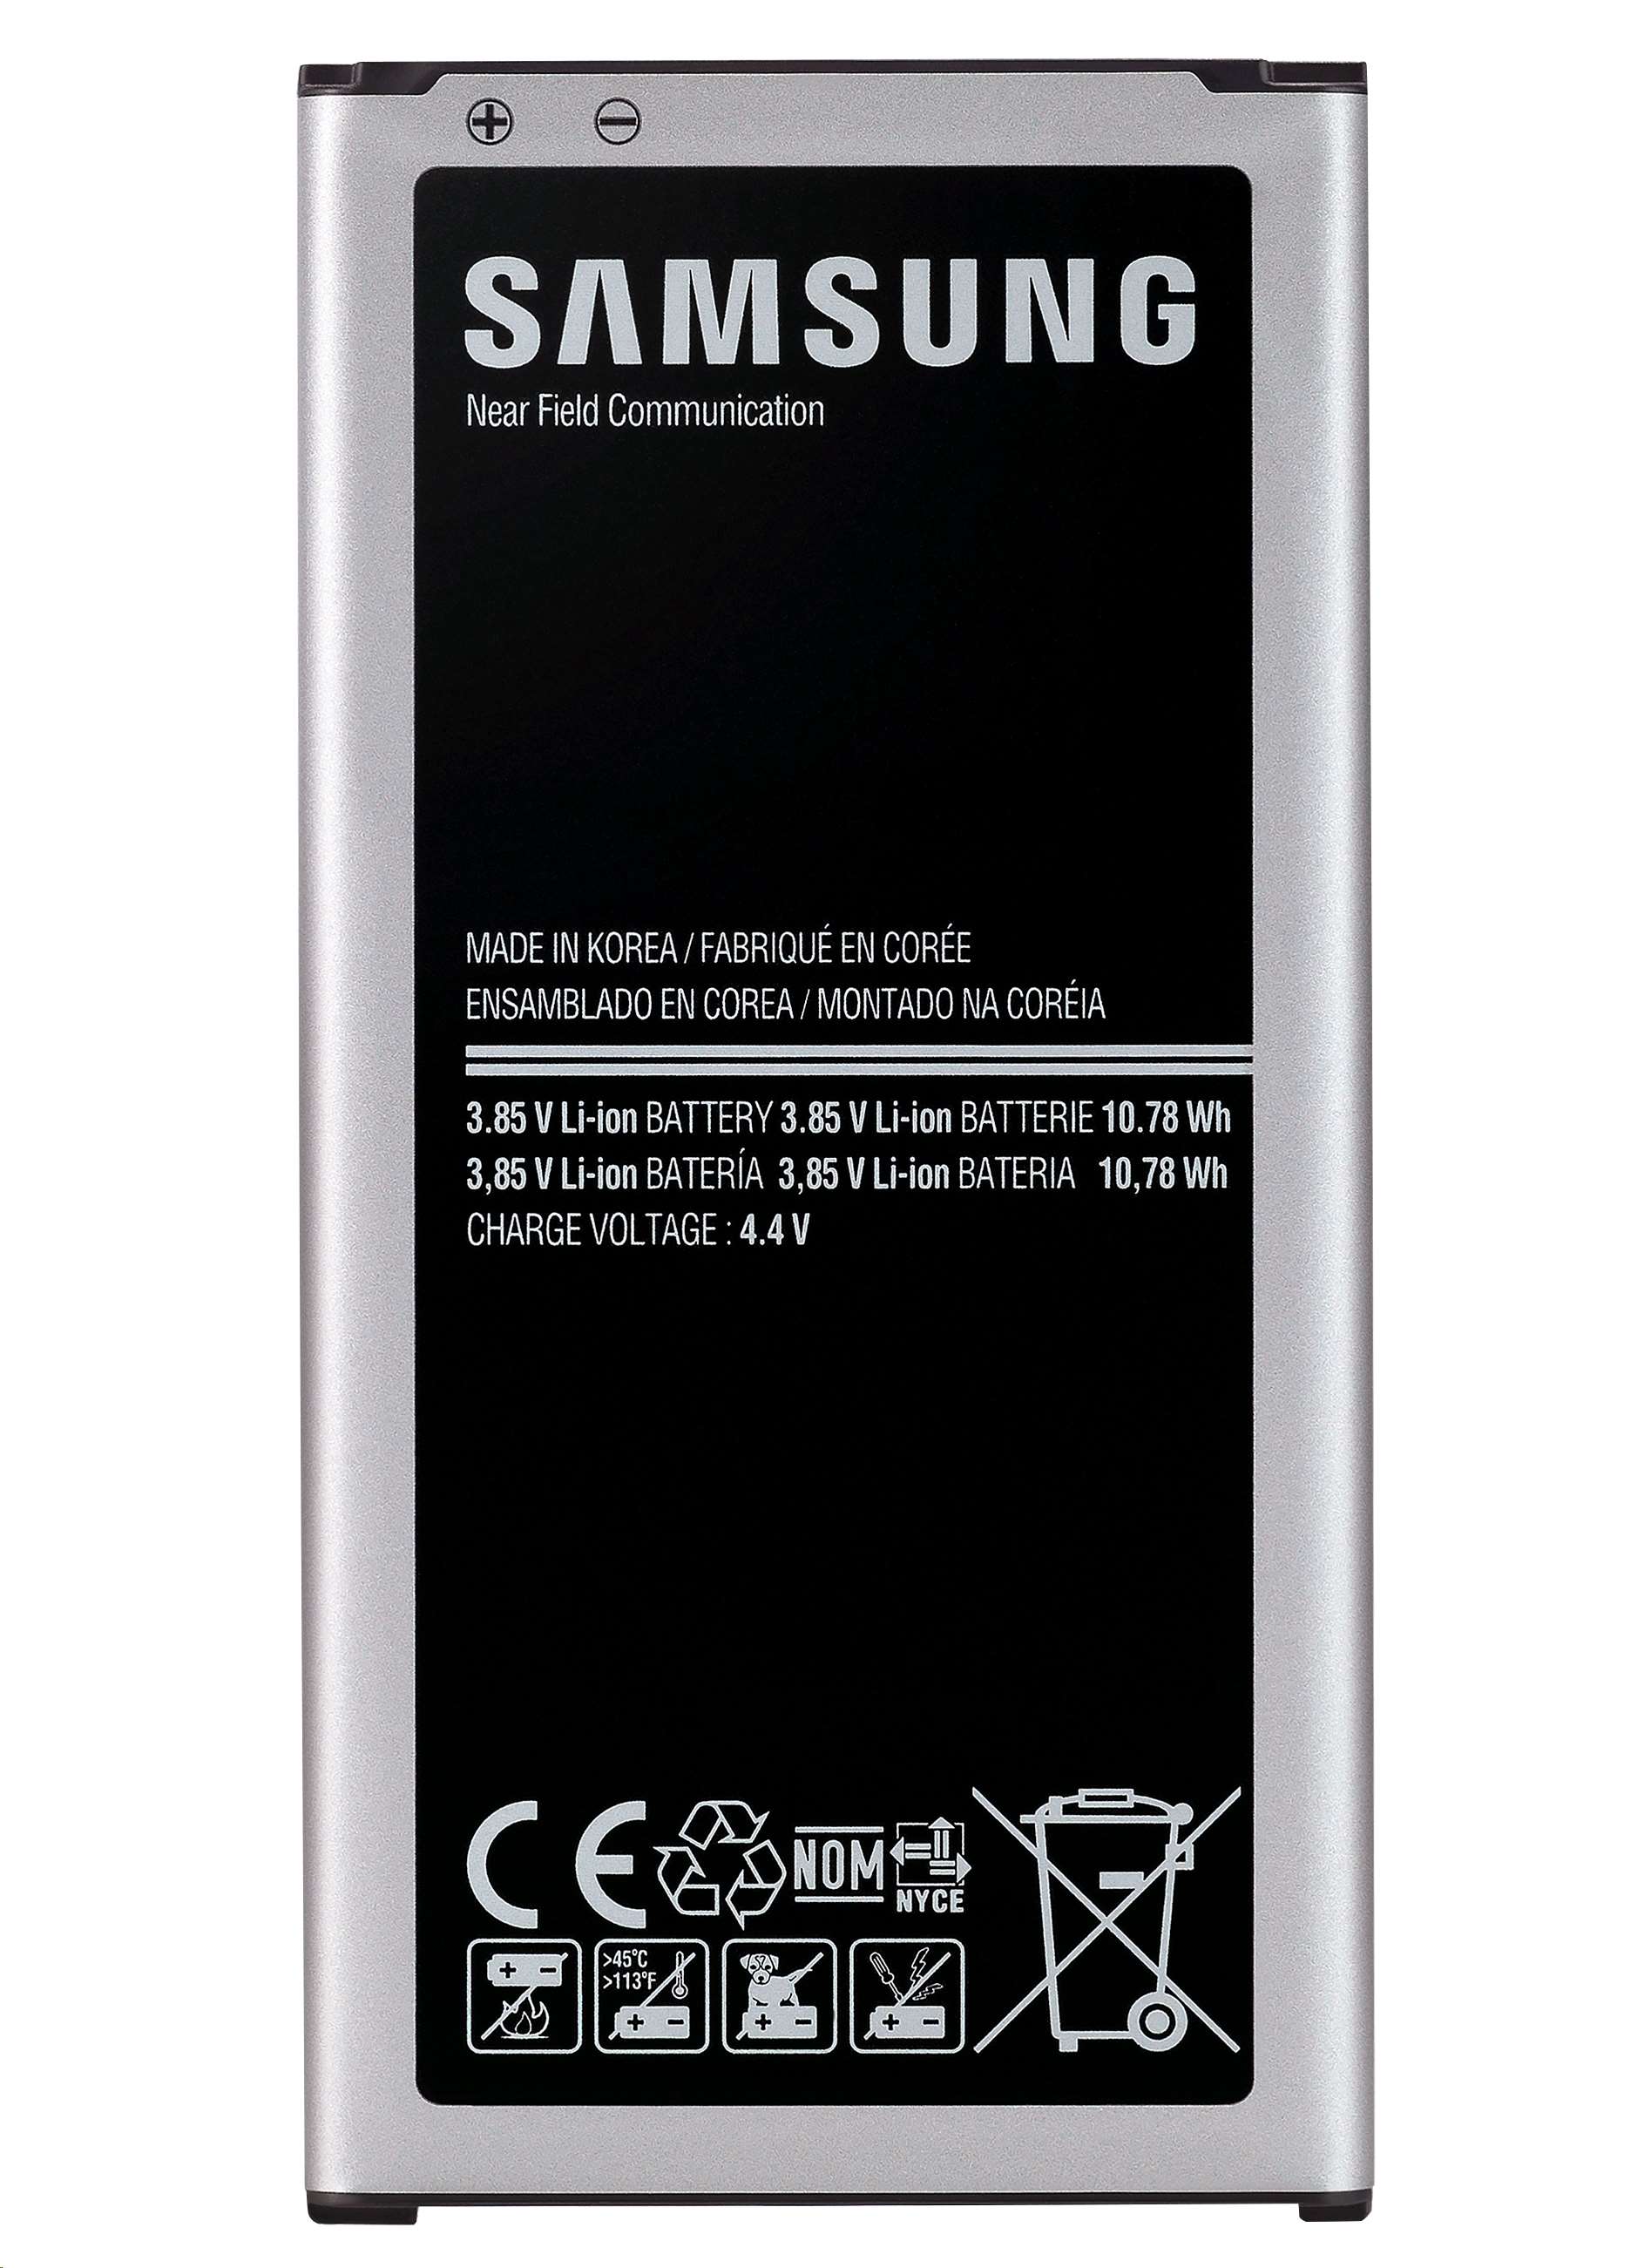 Middag eten ziekte zwaartekracht Samsung Galaxy S5 (G900) batterij (origineel) vervangen - Computorium |  Computorium